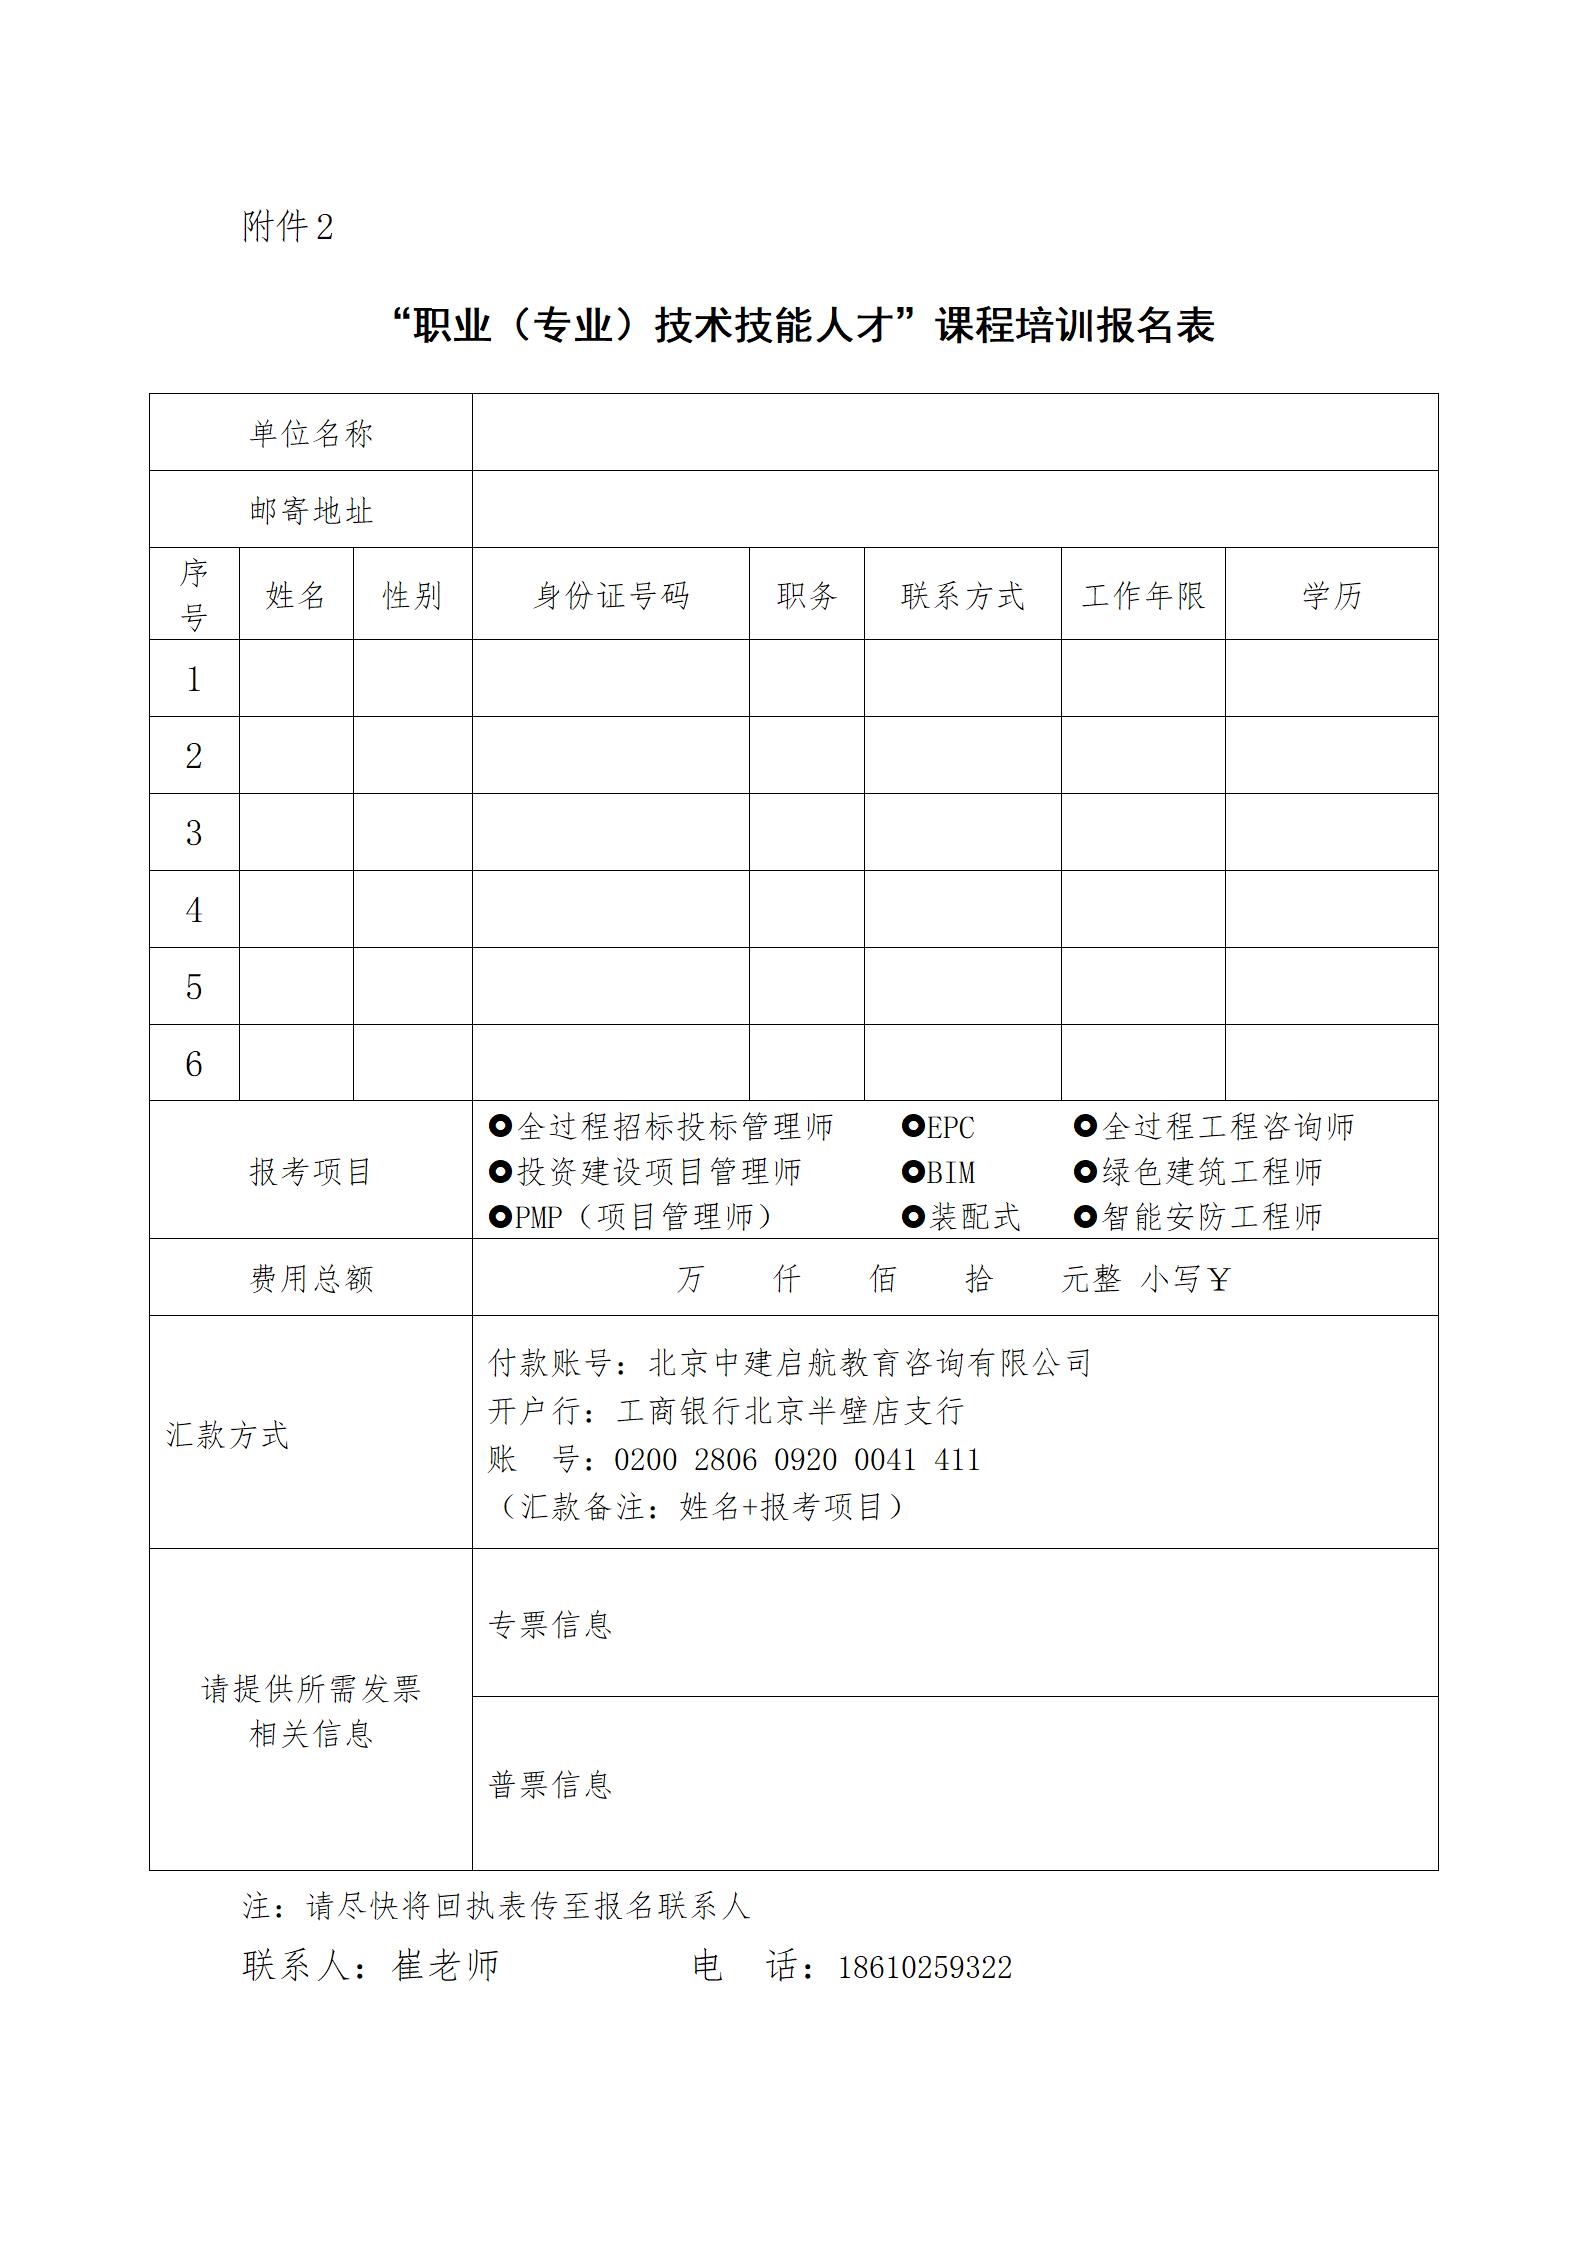 国培网专技项目招生函(1)_05.jpg